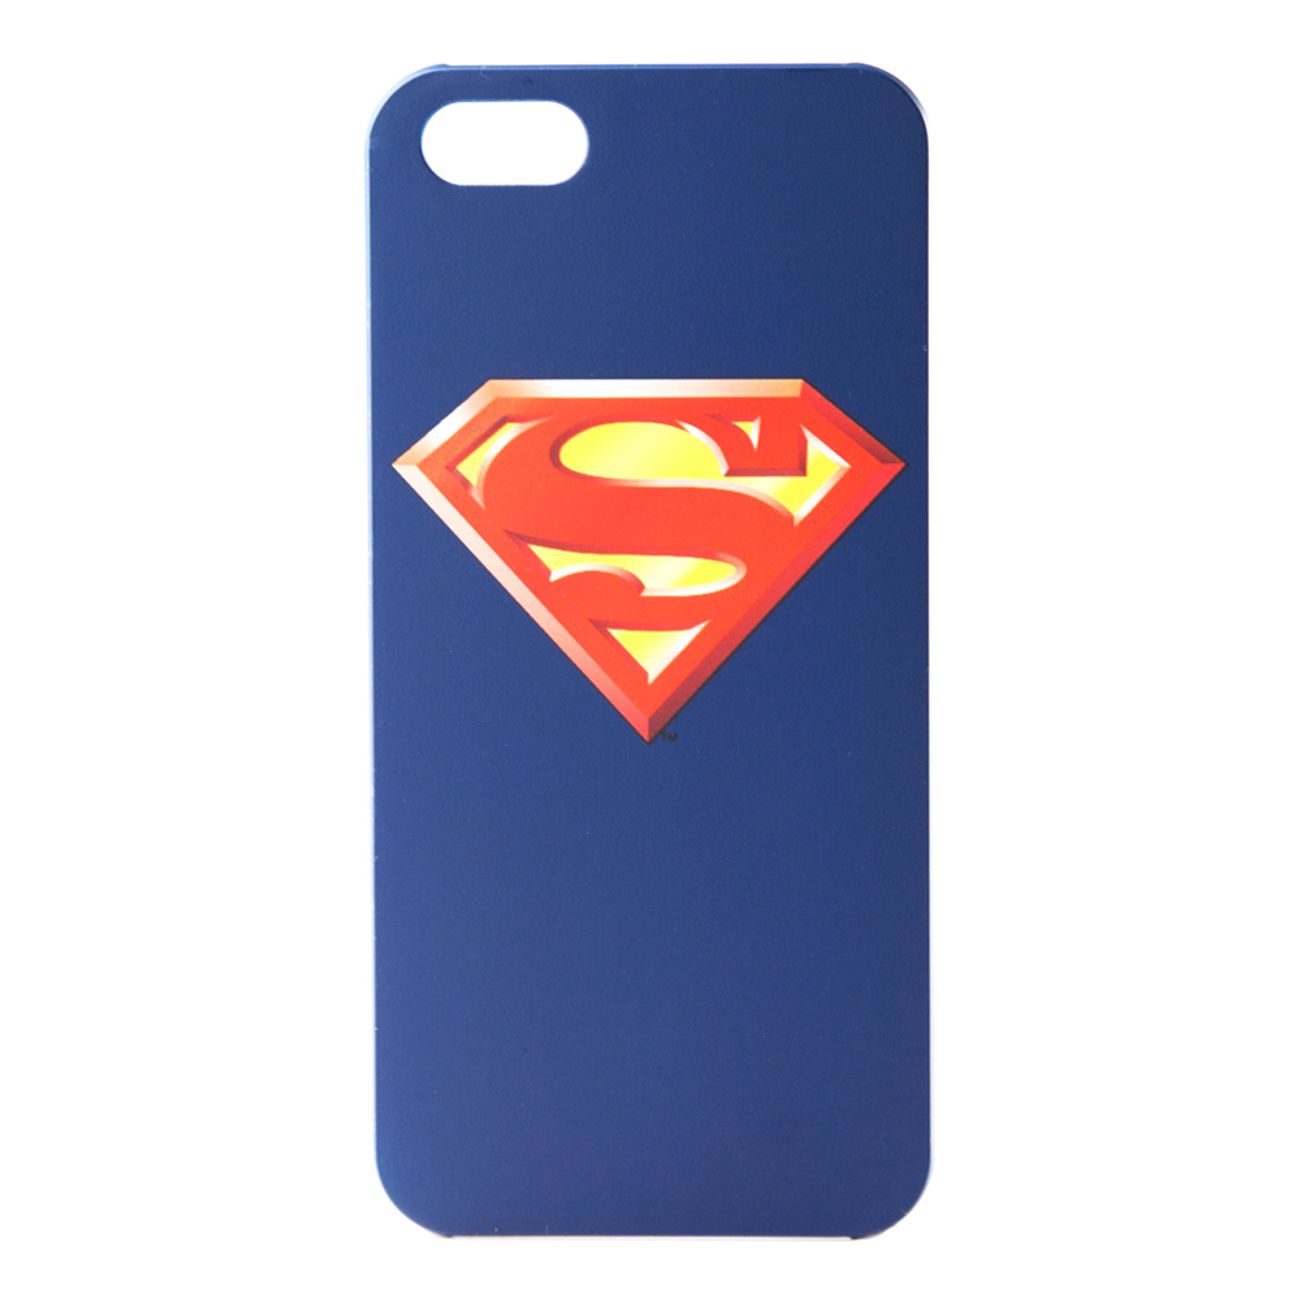 superman-iphone-5-skal-1